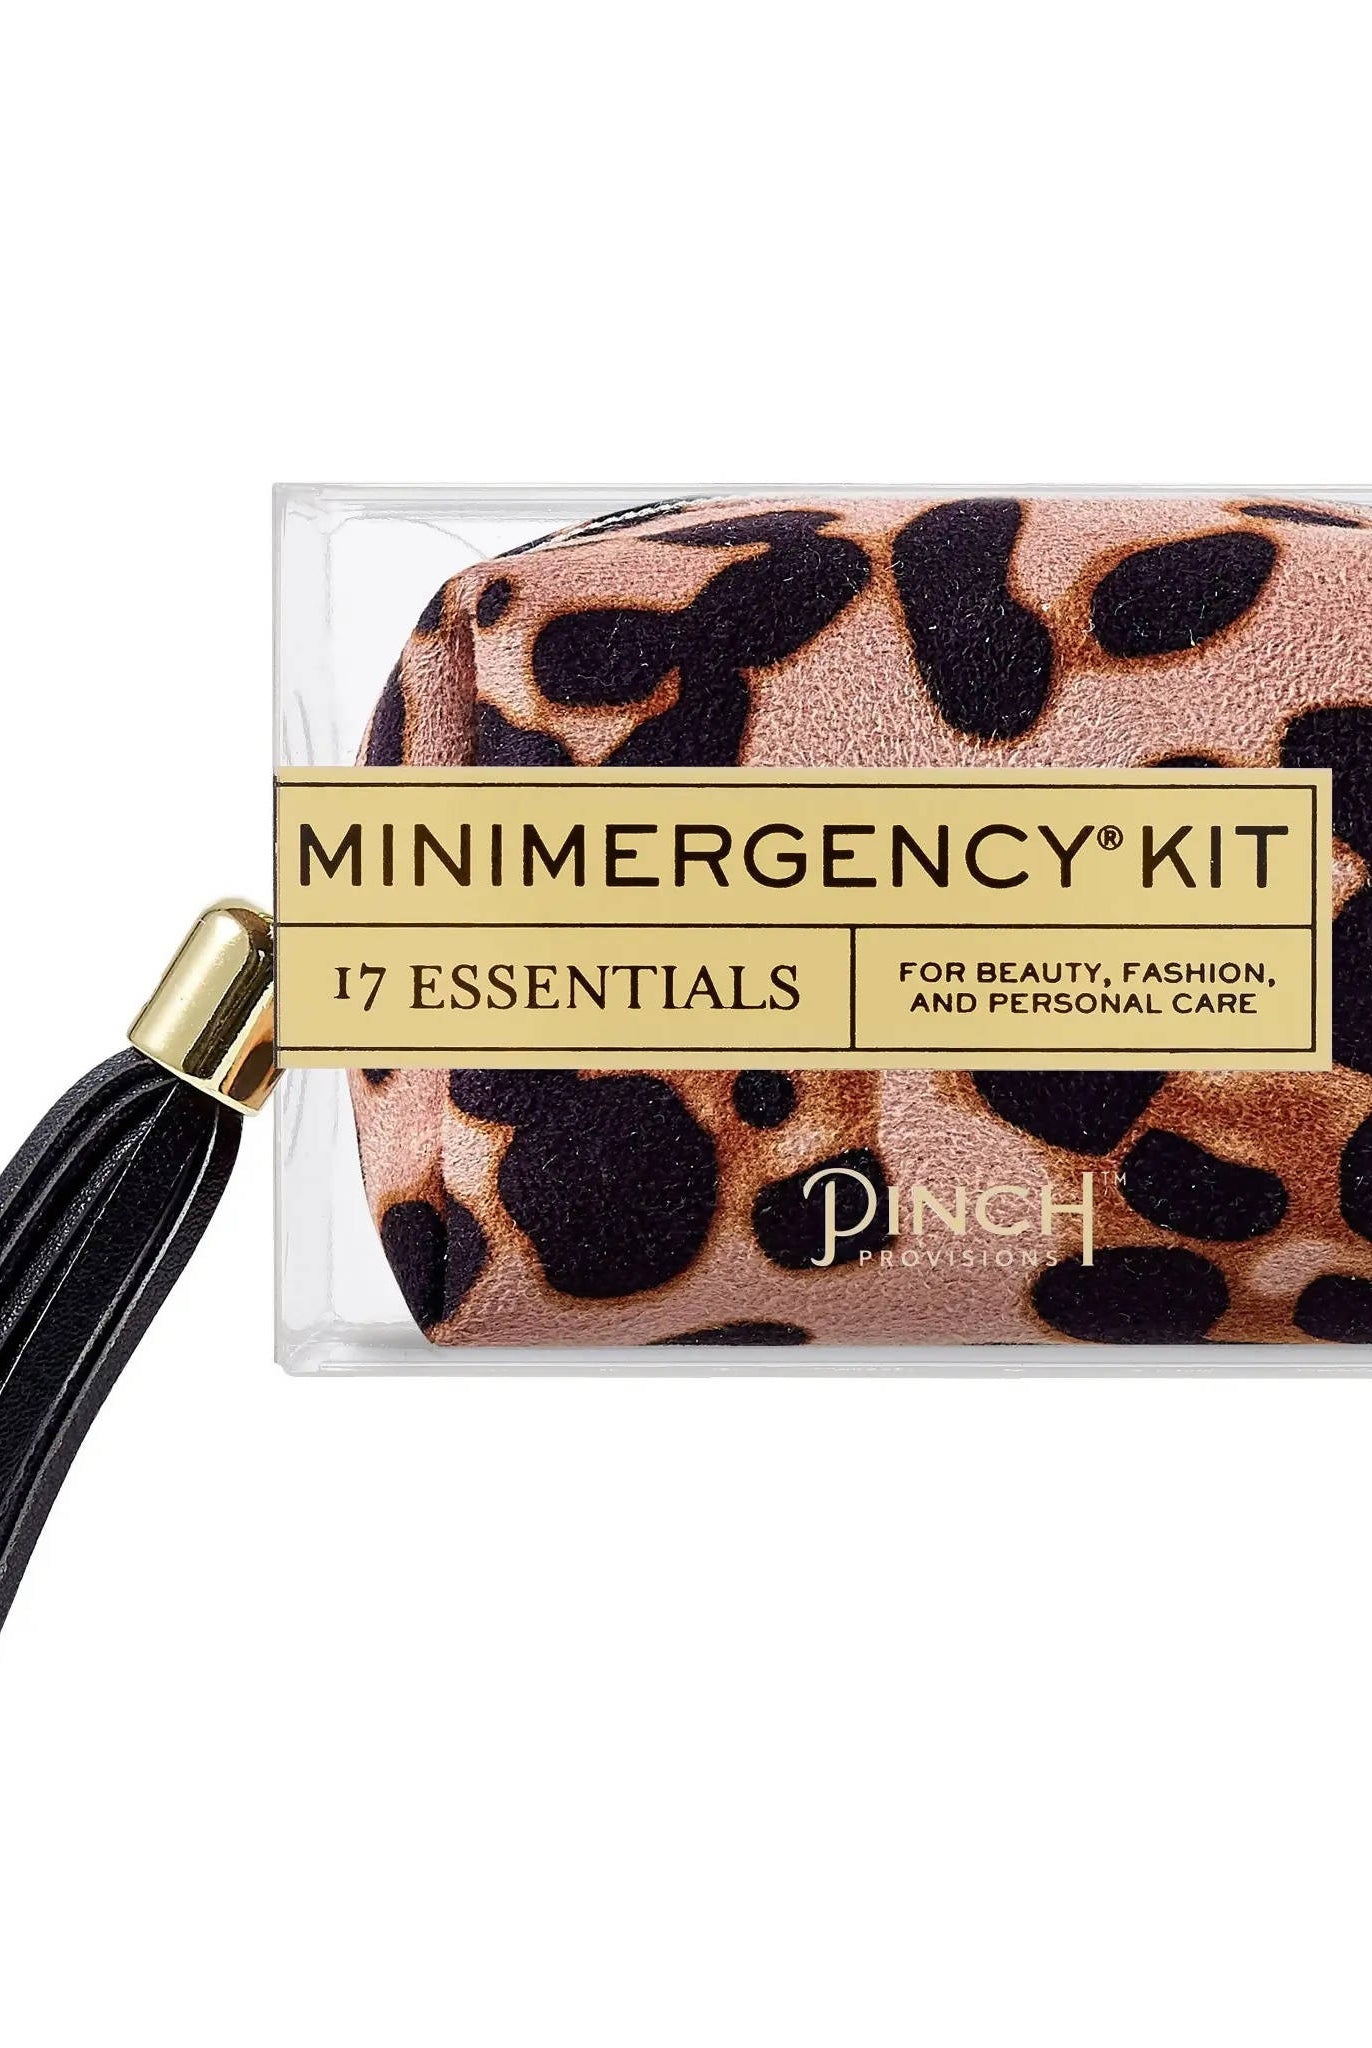 Minimergency Kit Brown Leopard-Minimergency Kits-Faithful Glow-Deadwood South Boutique, Women's Fashion Boutique in Henderson, TX